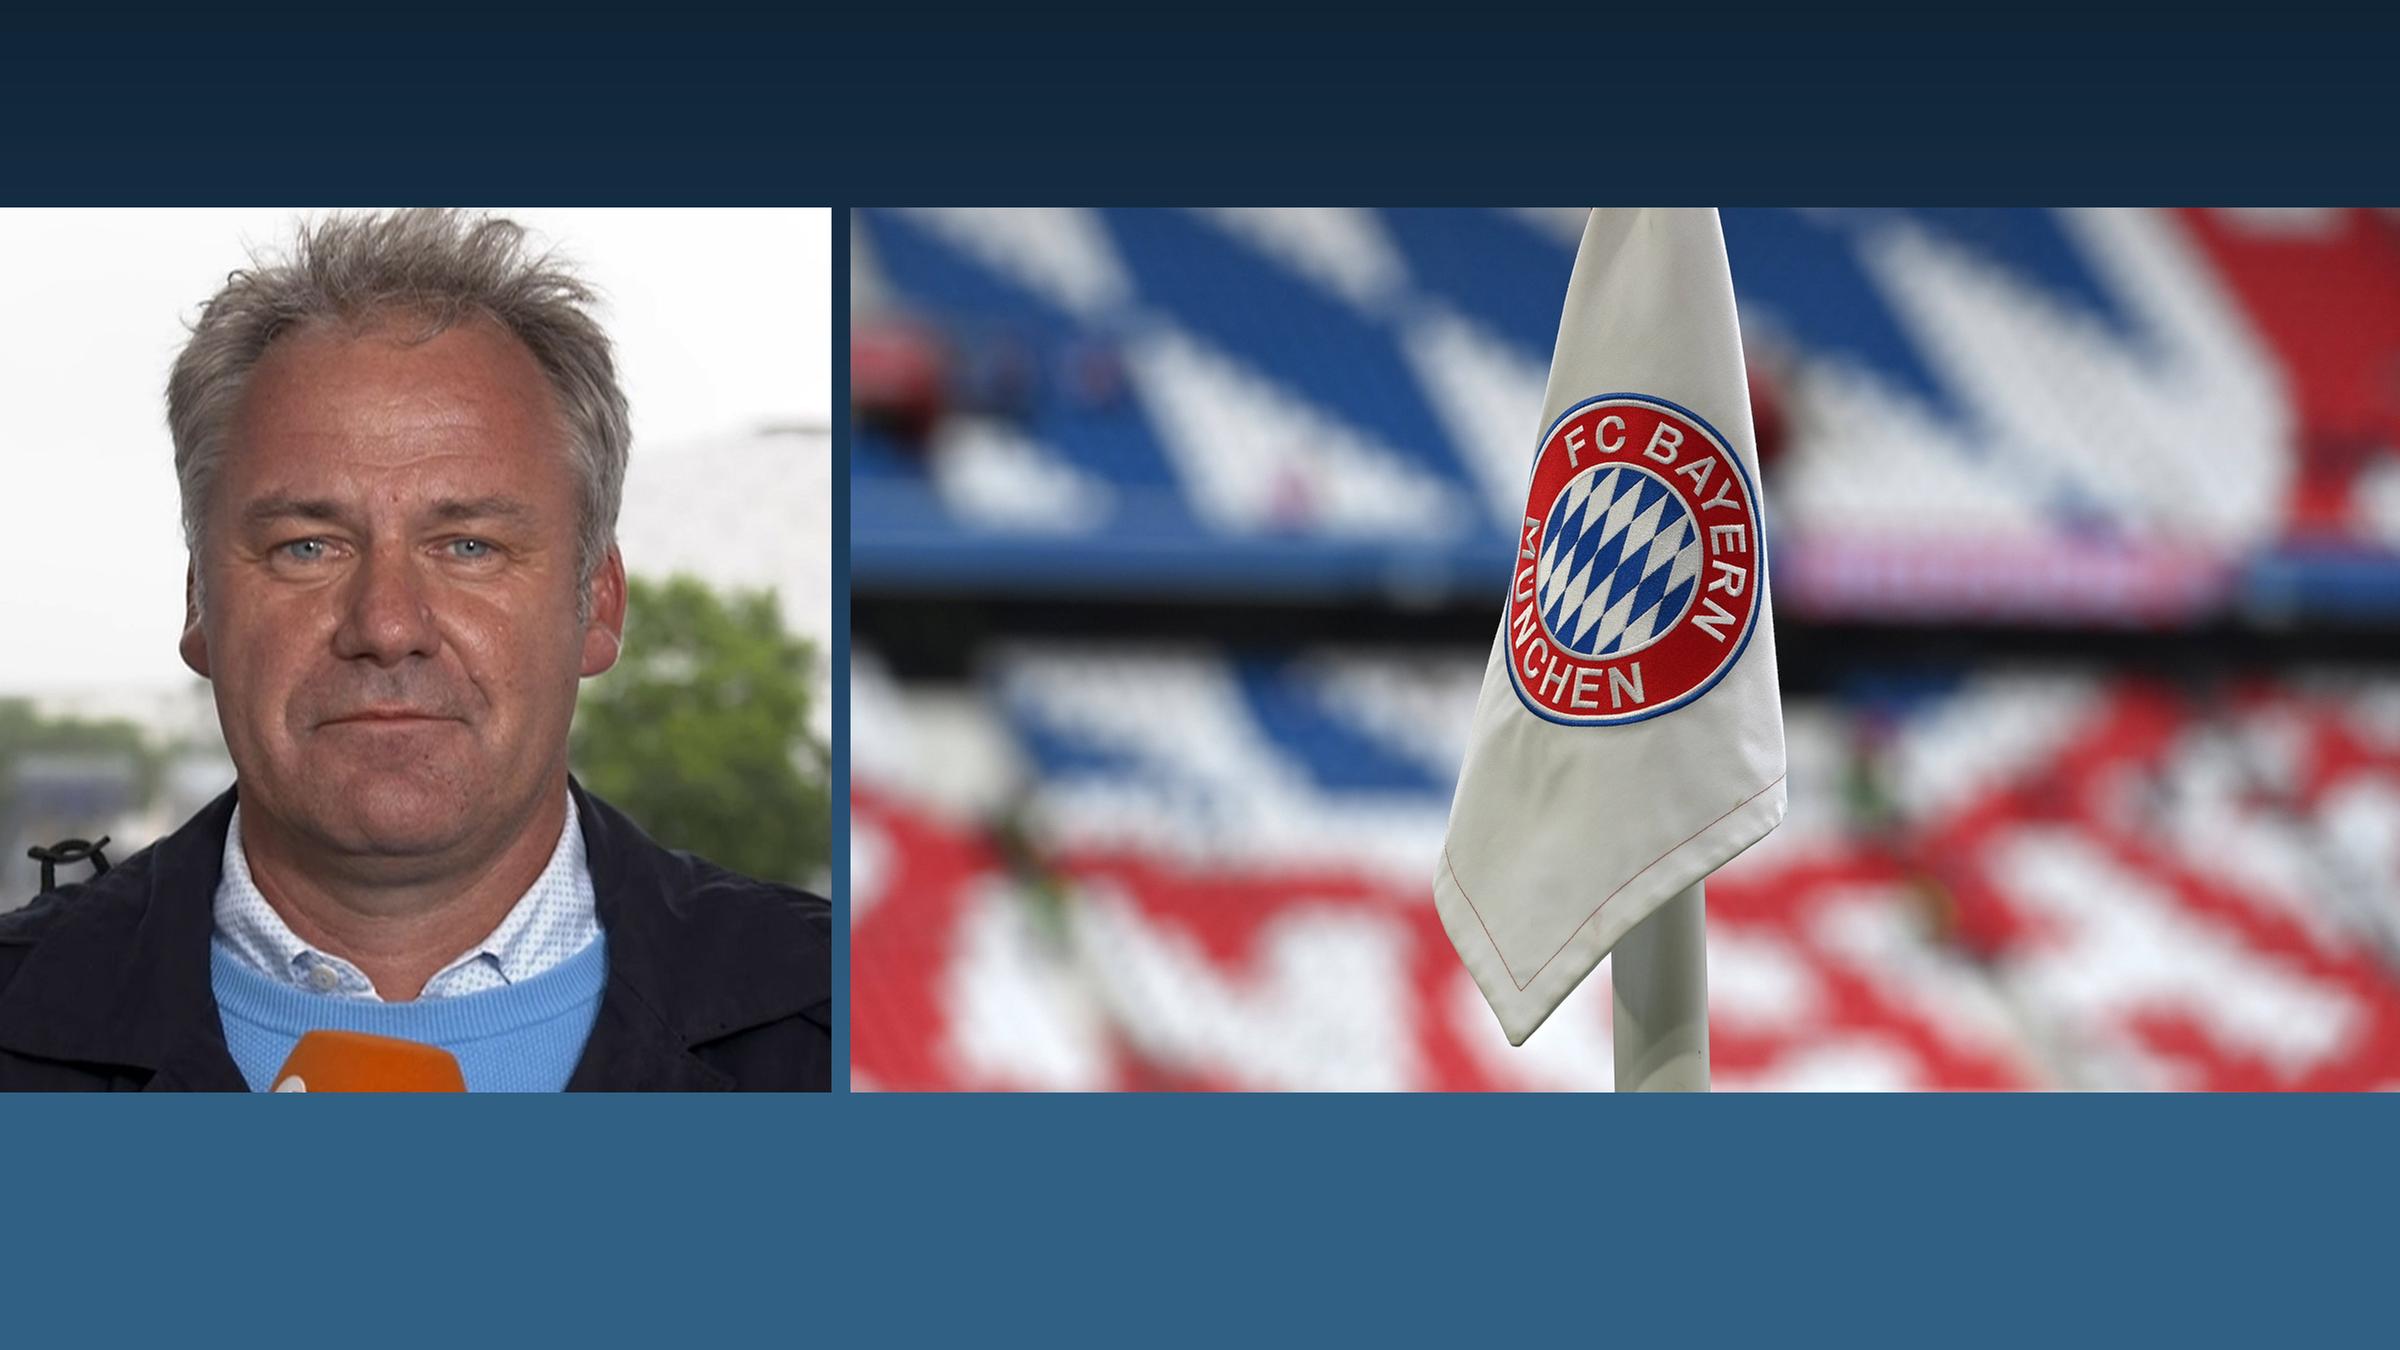 Kommentar von Nils Kaben zum FC Bayern München